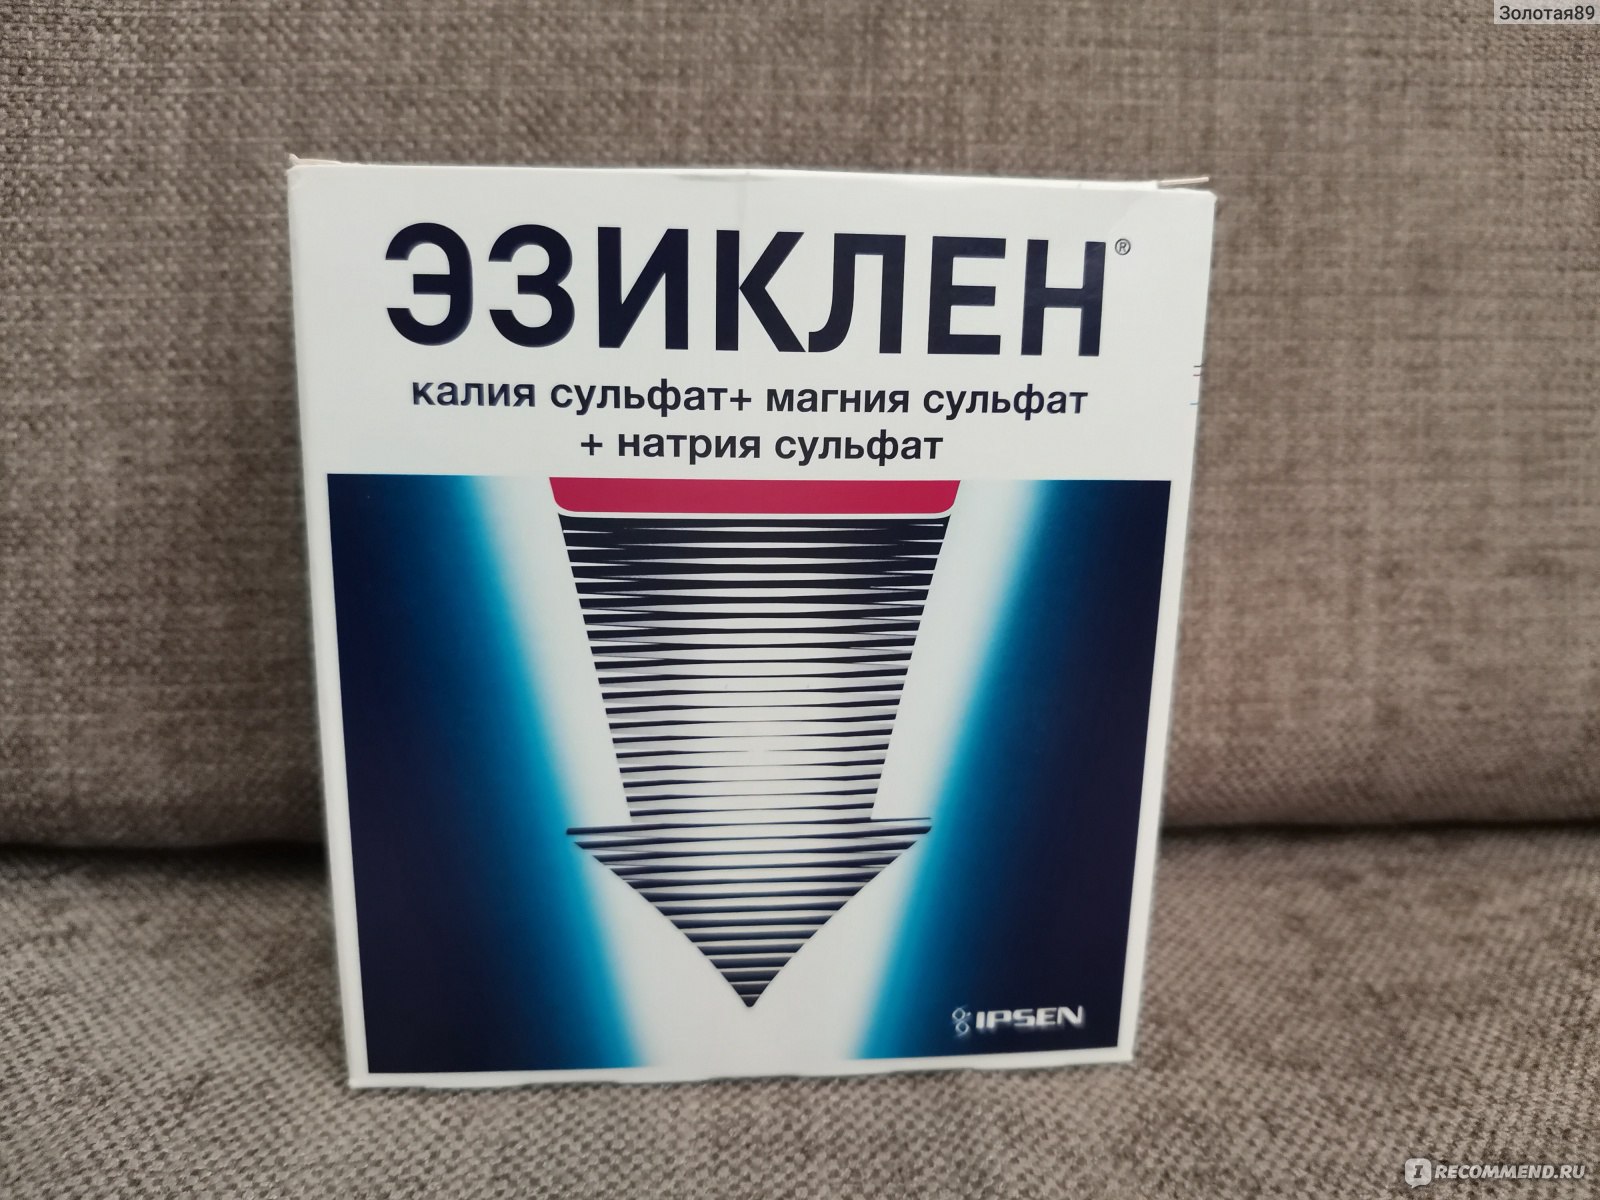 Эндофальк инструкция по применению, цена на препарат в аптеках Украины - МИС Аптека 